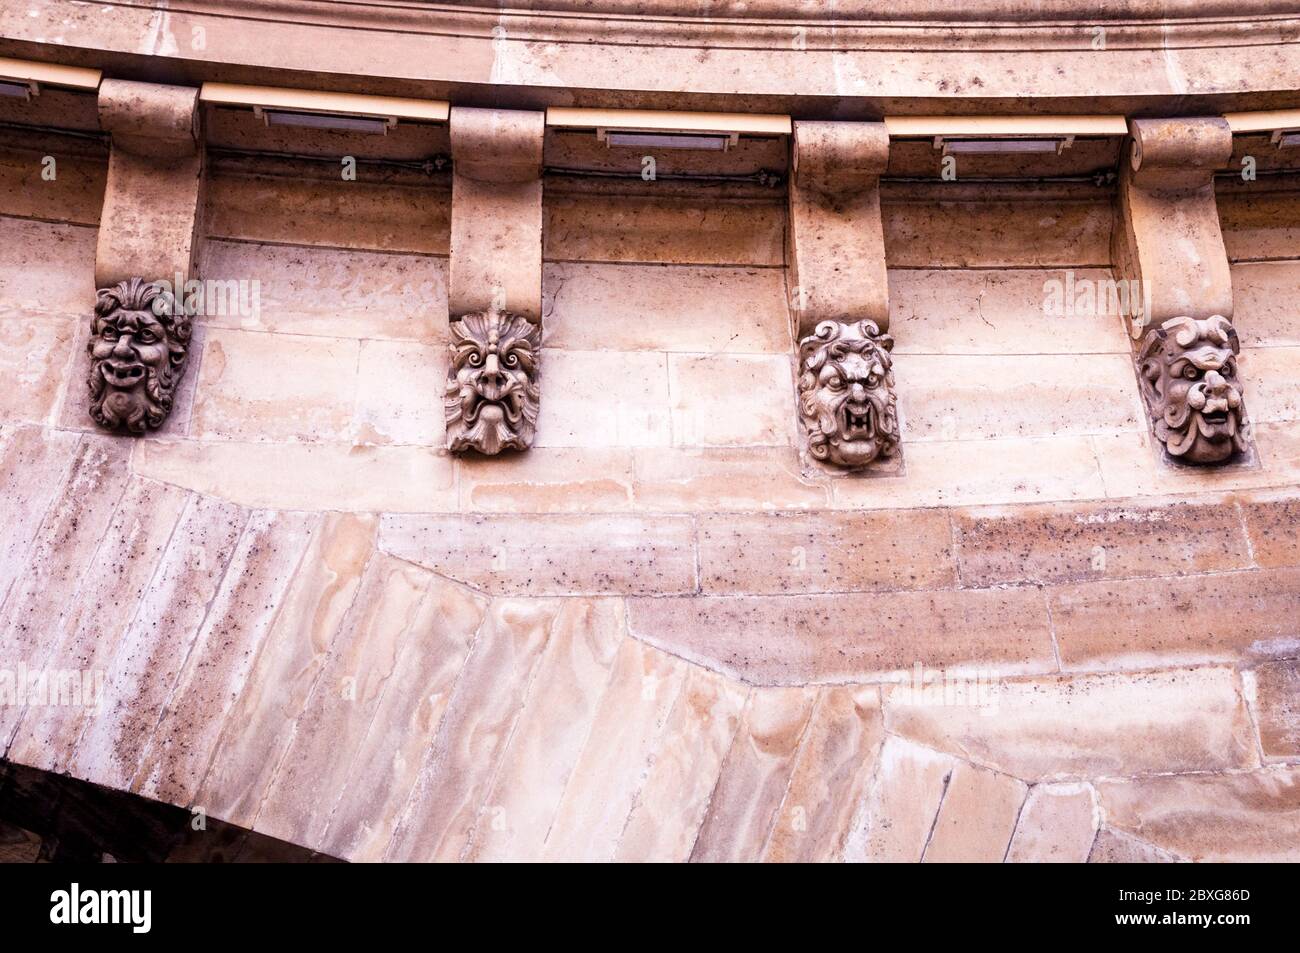 Grutas, o mascarones, bordean el puente Pont Neuf en París, Francia, un detalle arquitectónico único, creado originalmente para advertir de los espíritus malignos. Foto de stock